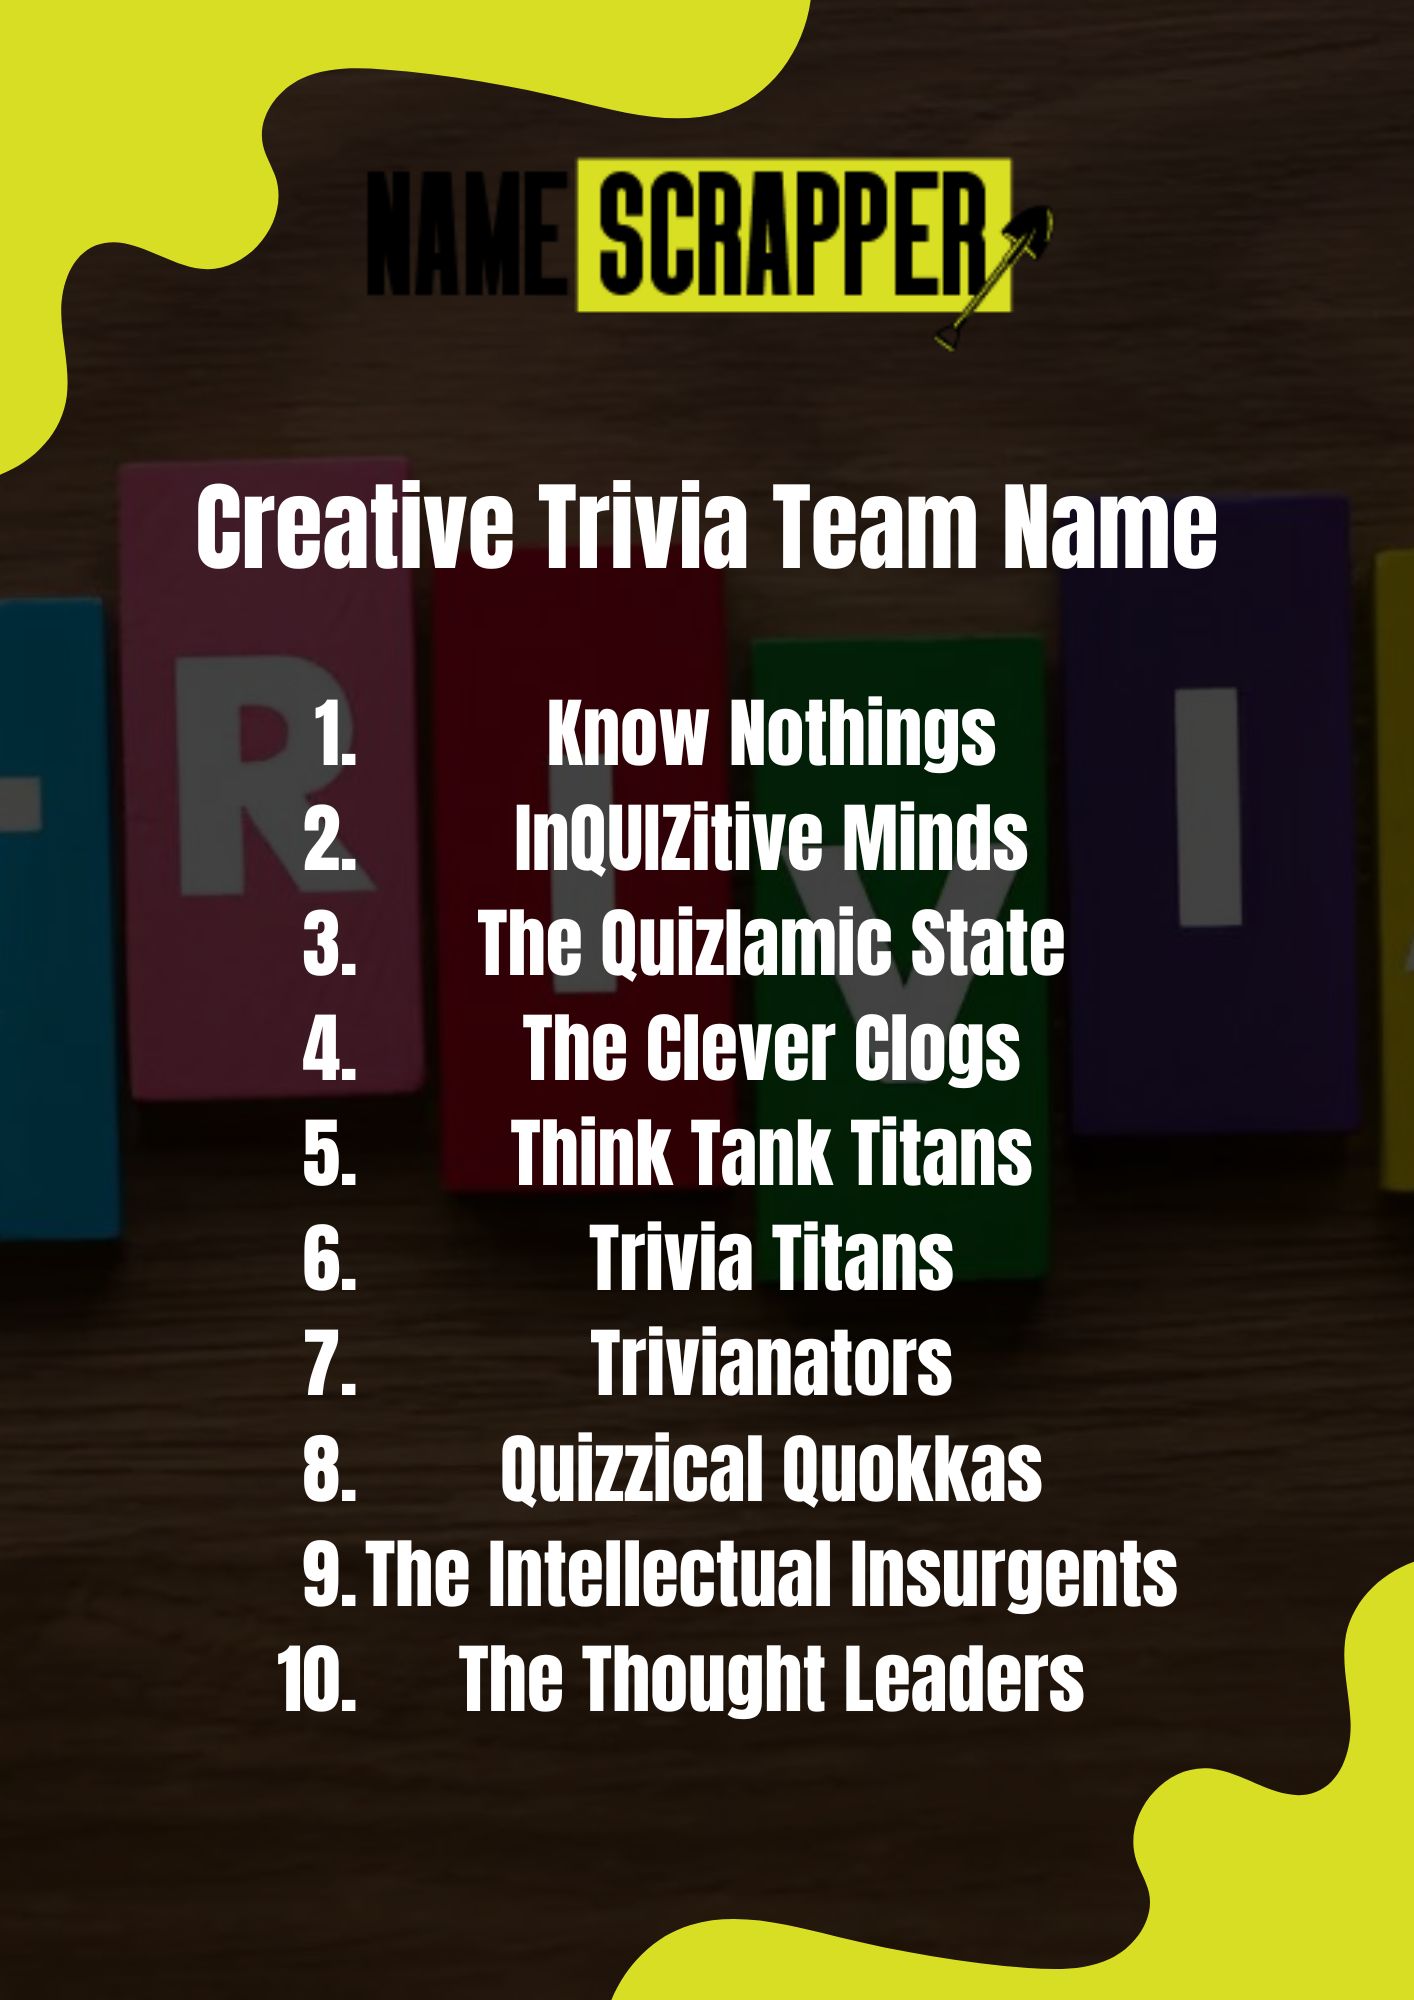 Creative Trivia Team Names